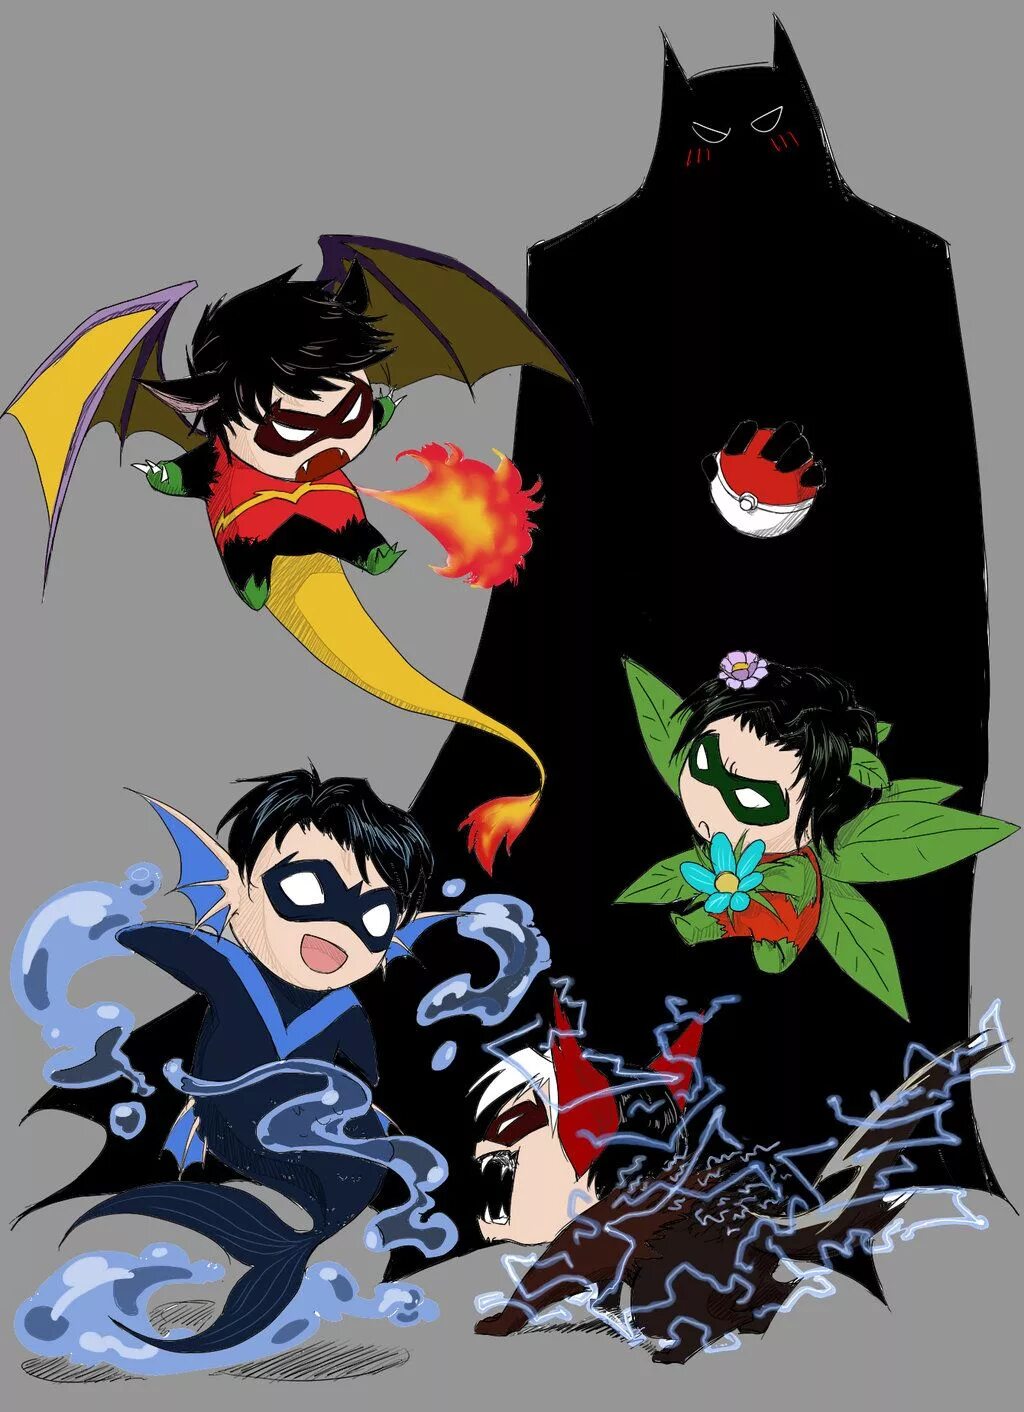 Bat Family арт. Семья Бэтмена. Бэт семья арты. Бэтмен и Робин арты.